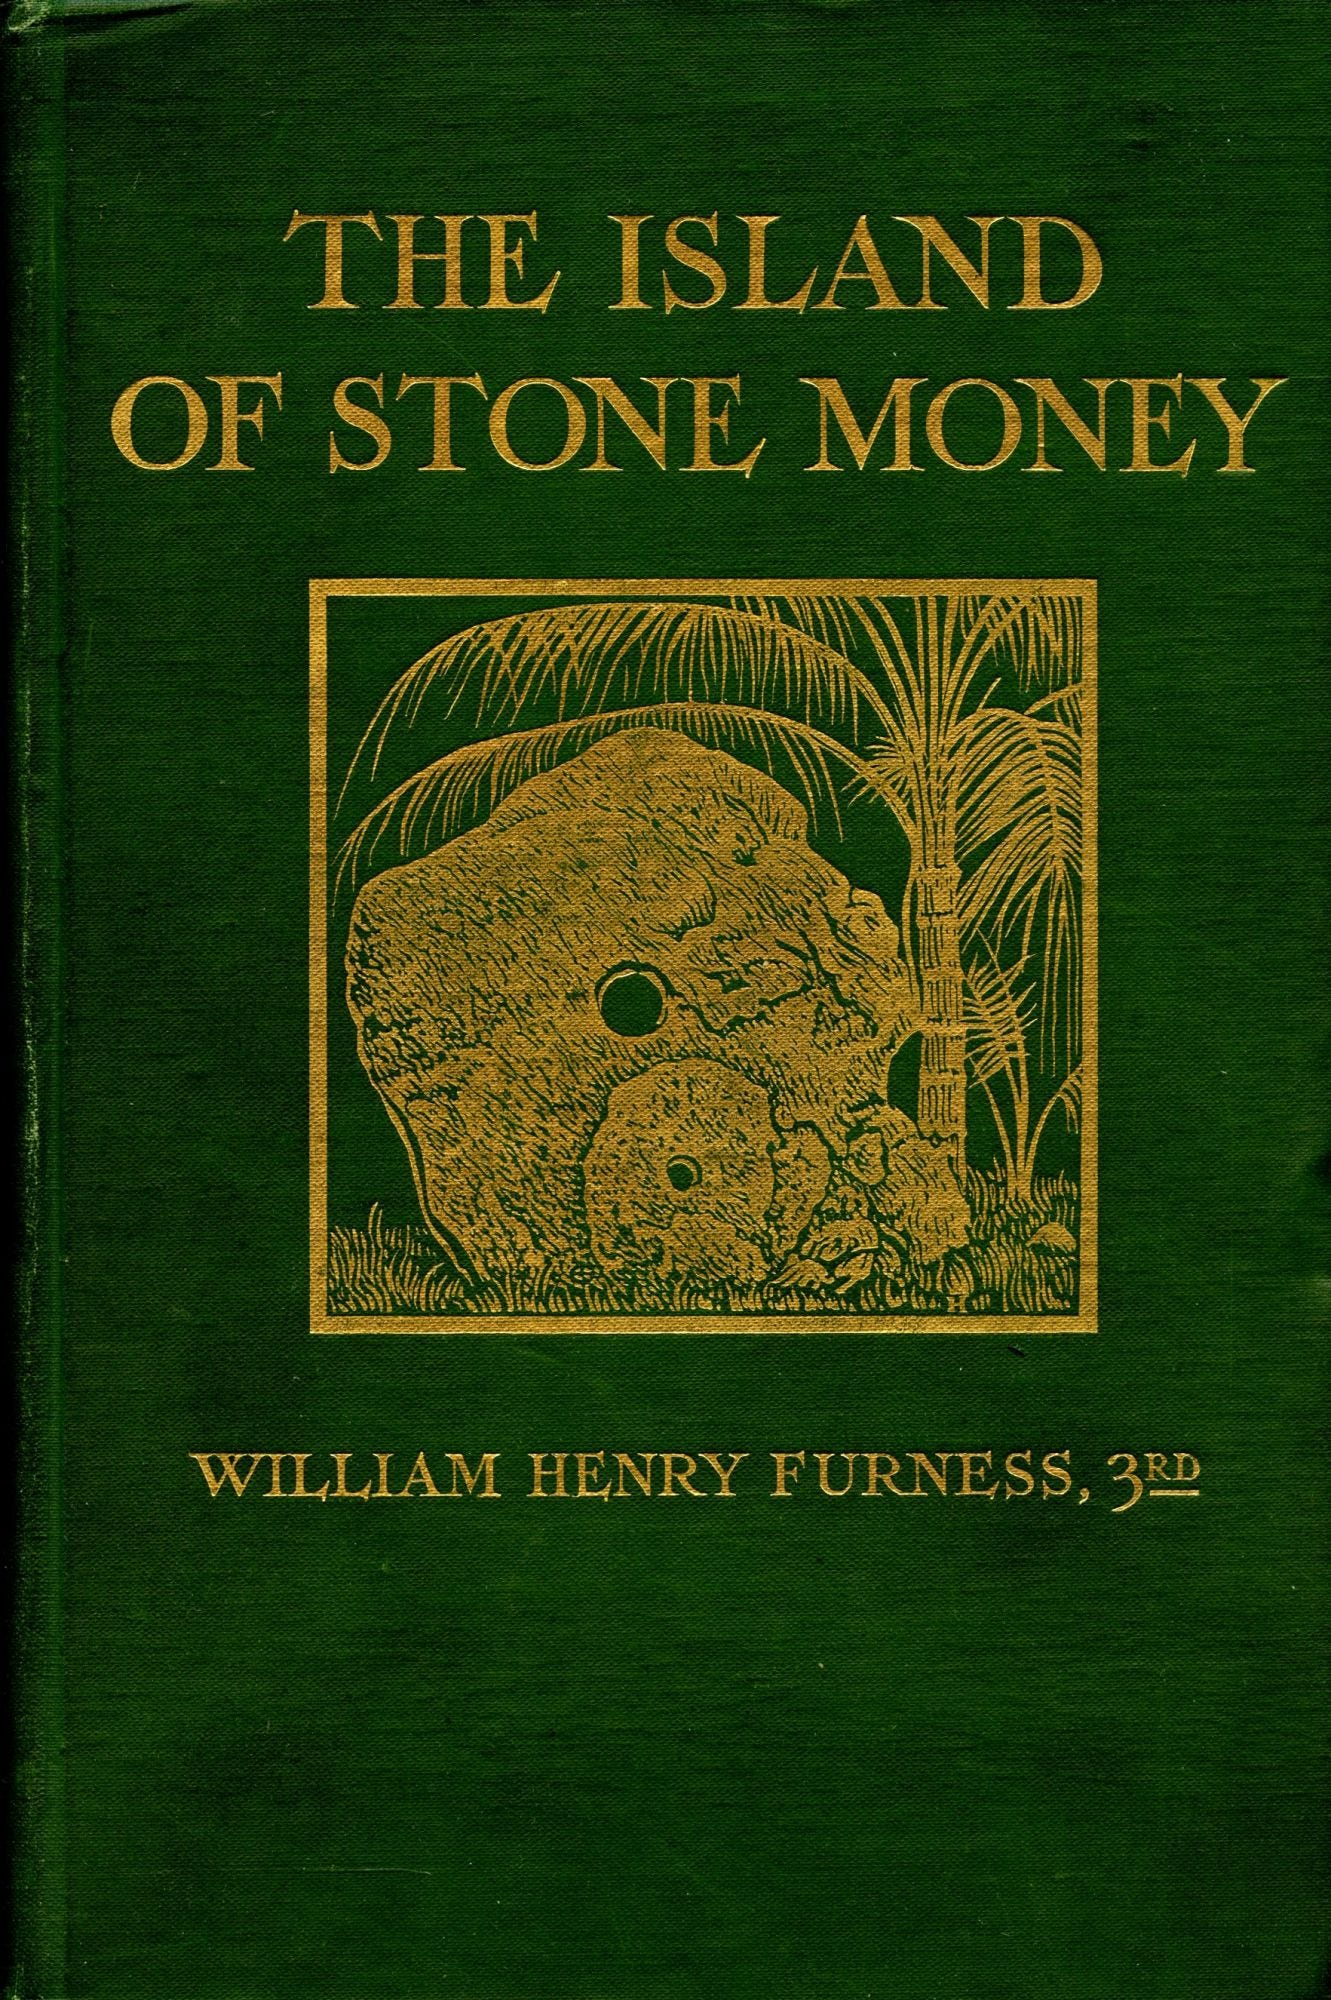 “La Isla del Dinero de Piedra”, el libro de William Henry Furness que describe las costumbres monetarias de los Yap.